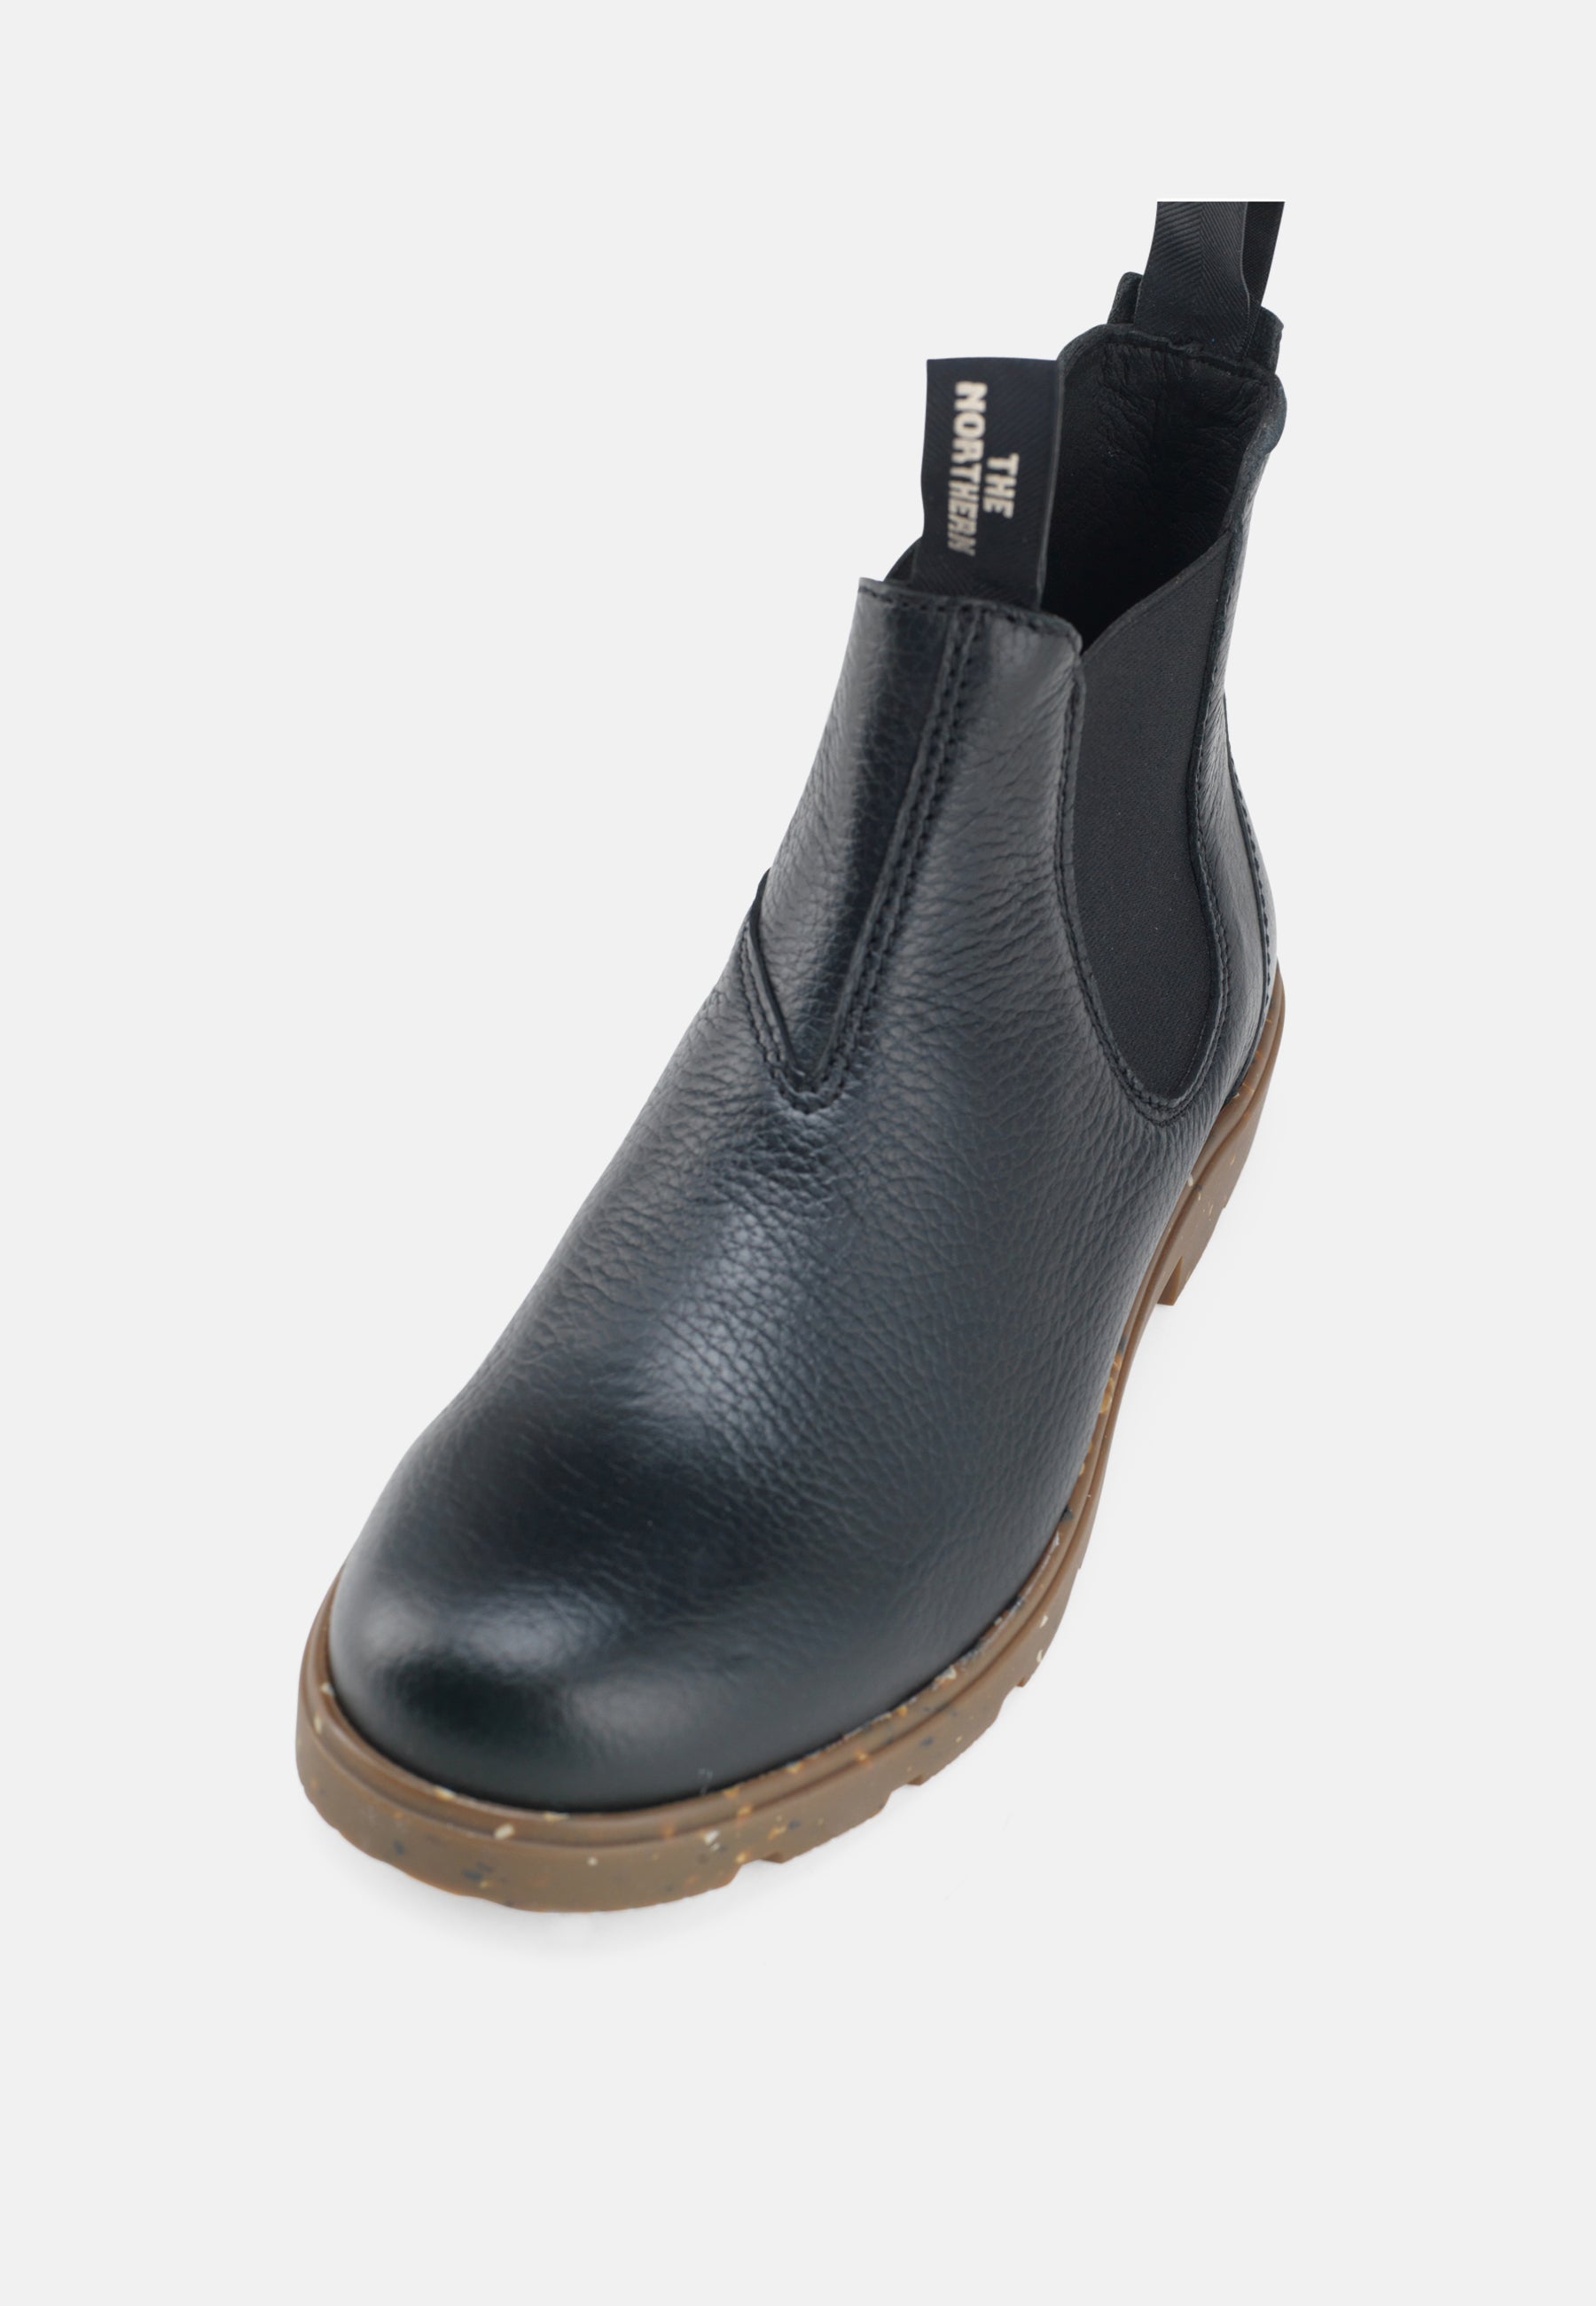 The Northern Gorm Støvle Elk Leather Boot 002 Black